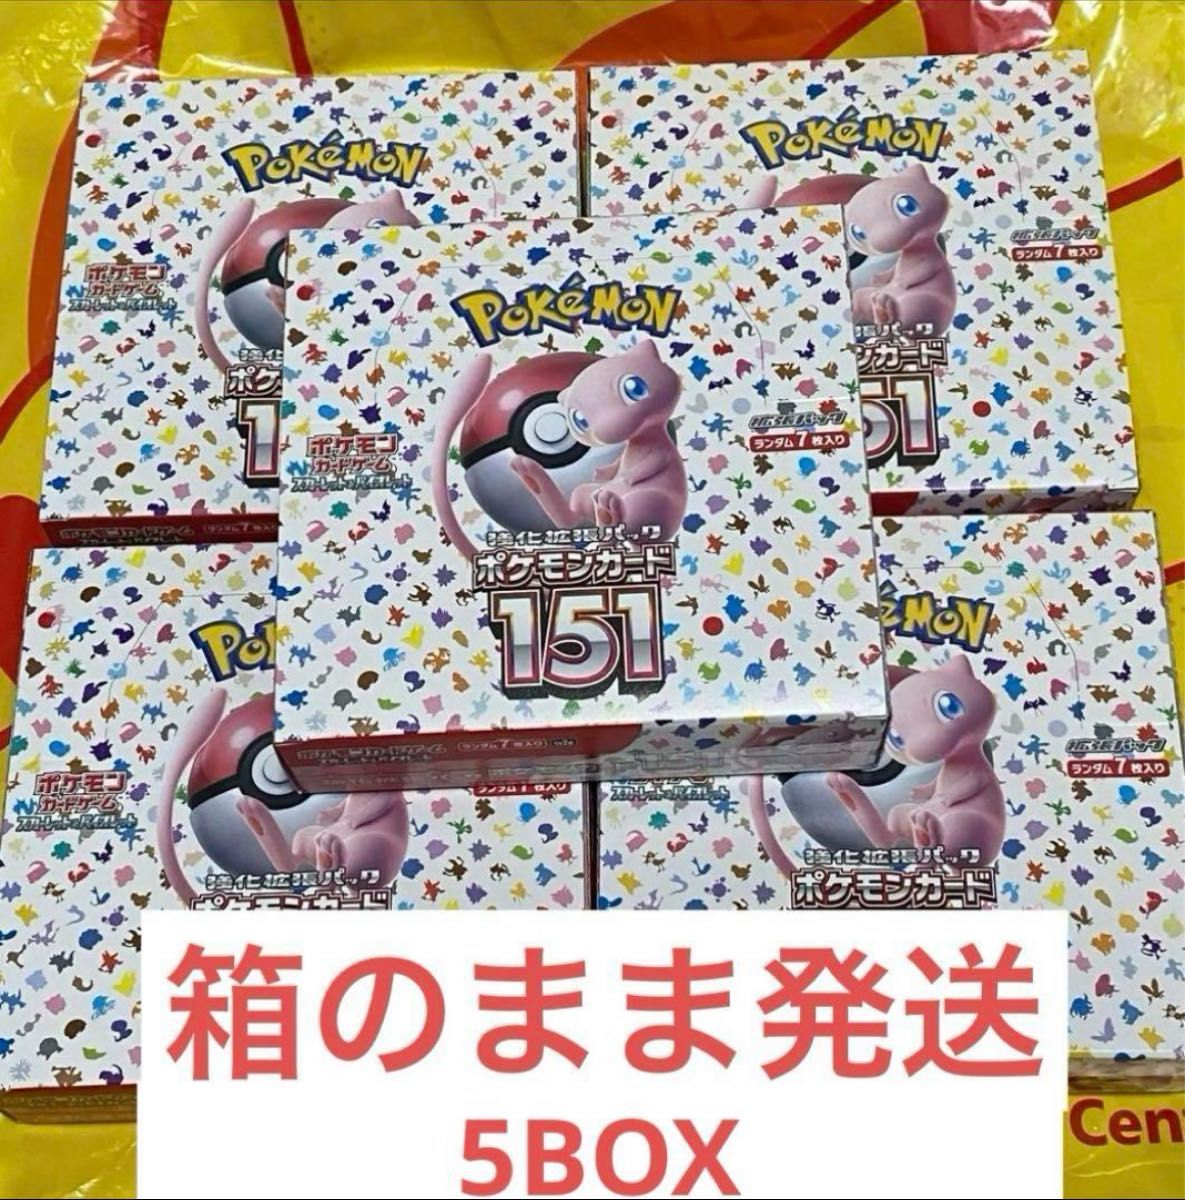 ポケモンカード151 5BOX ペリペリ付きシュリンクなし5BOXセット